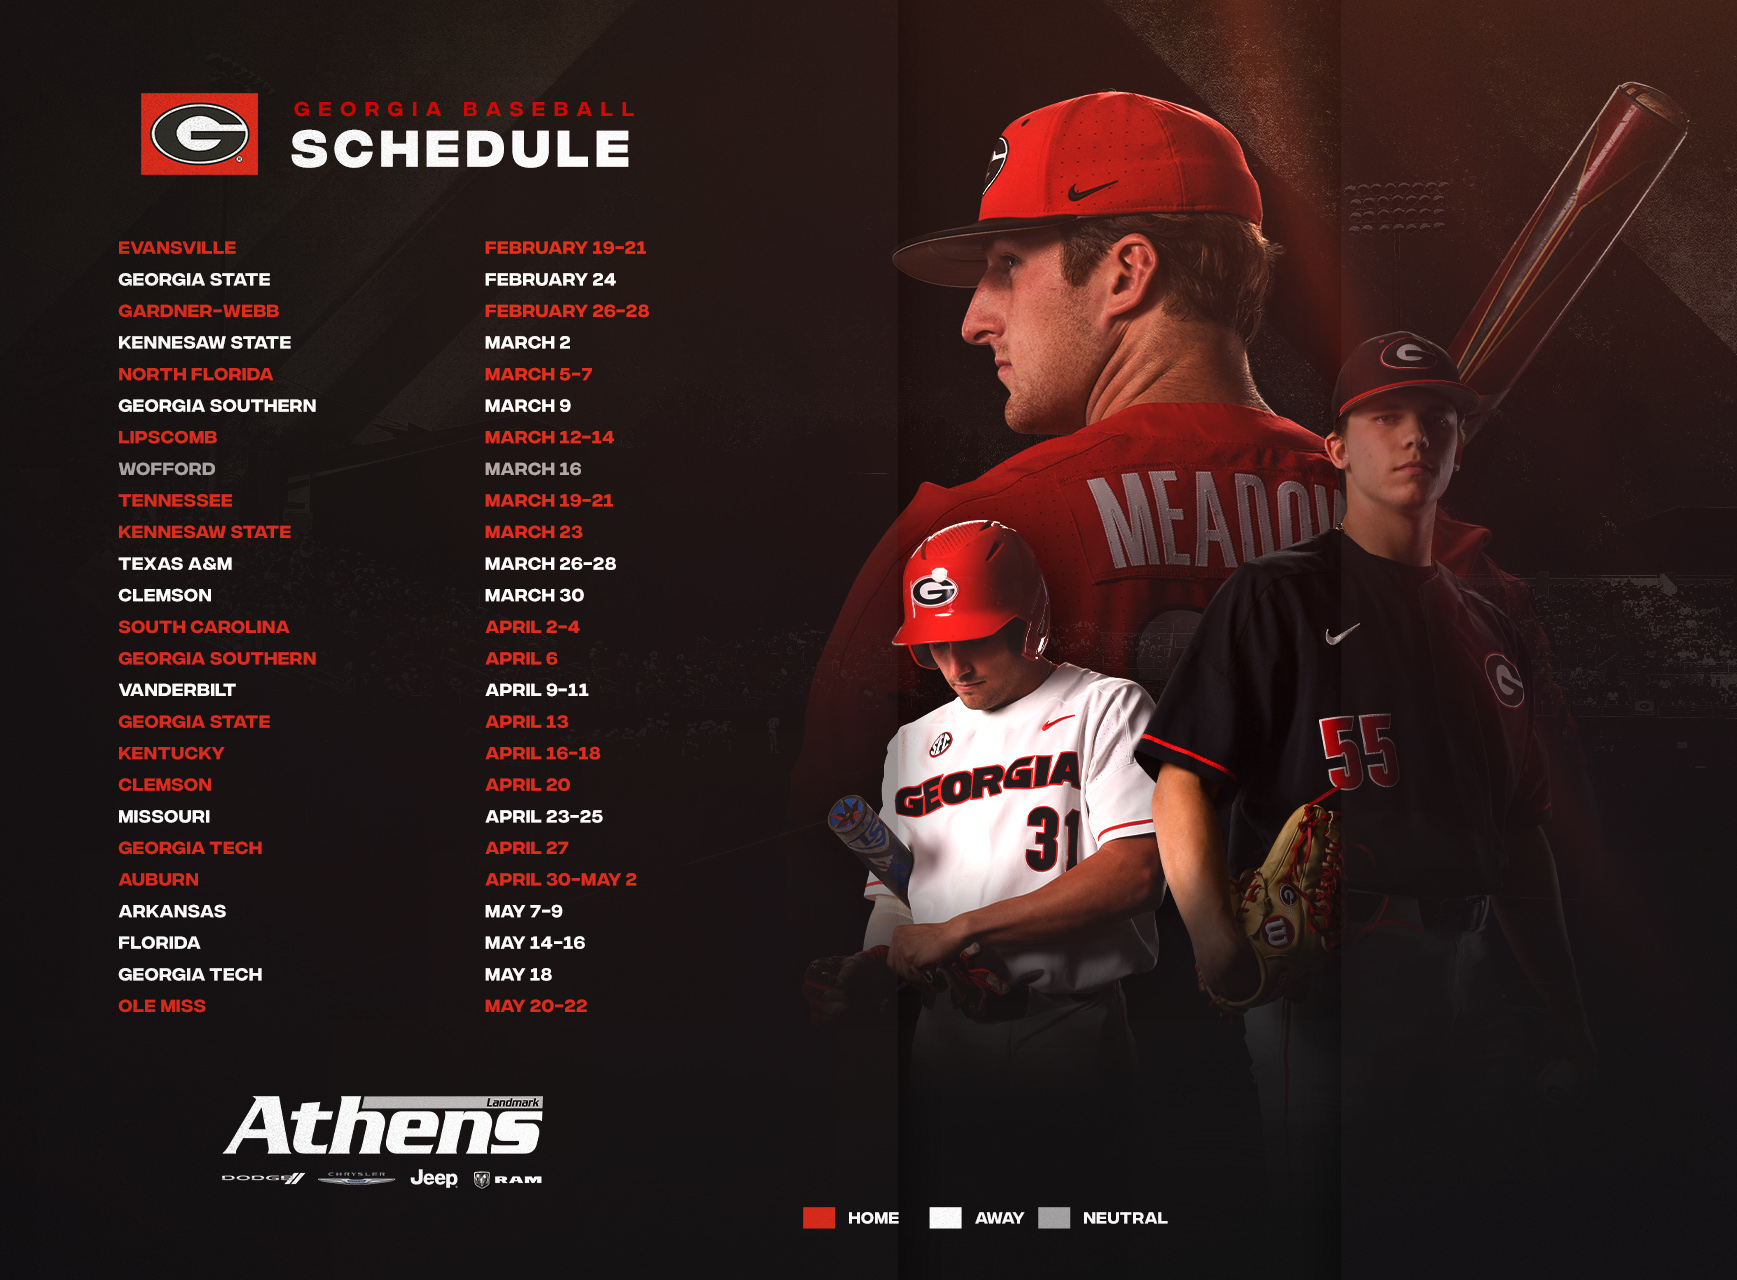 Georgia Bulldogs on X: 👀 the 2021 Georgia Baseball schedule! The